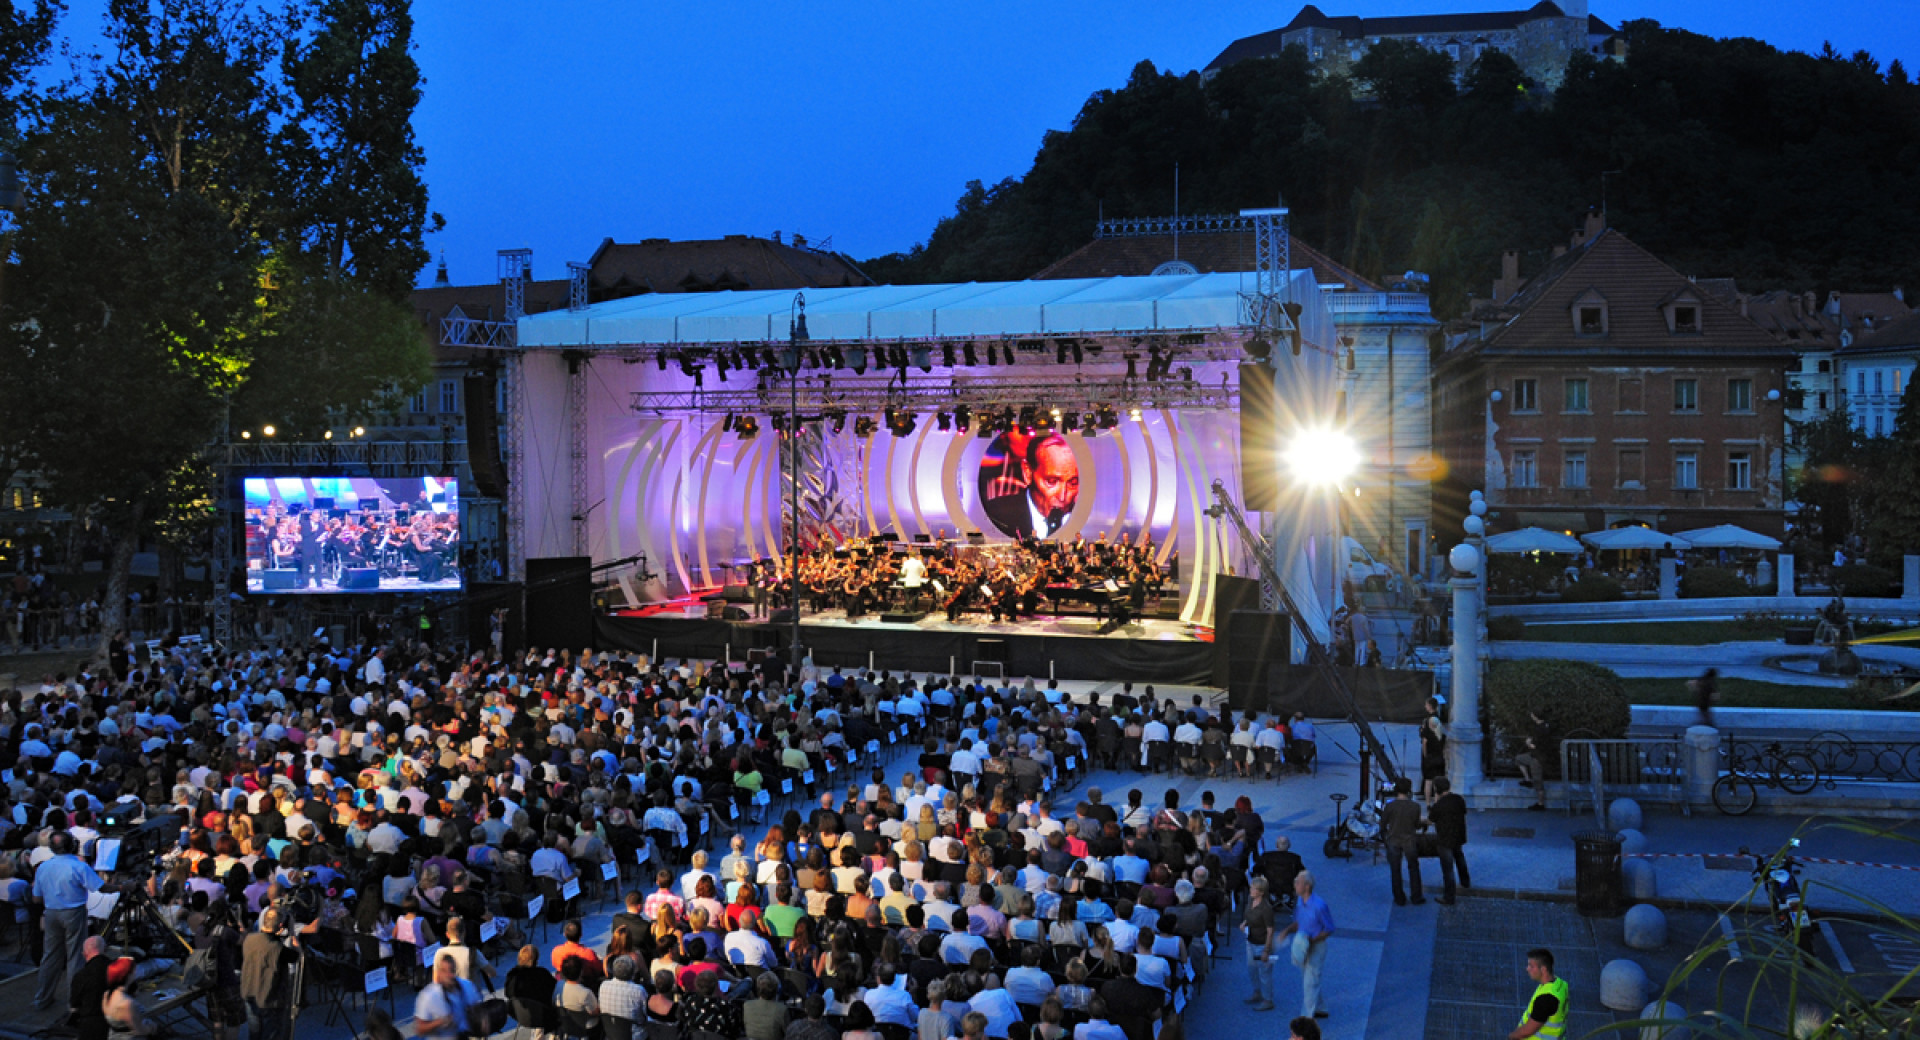 Junij v Ljubljani na polno odprl svoja vrata – zabavne prireditve čez dan, visoka kultura zvečer